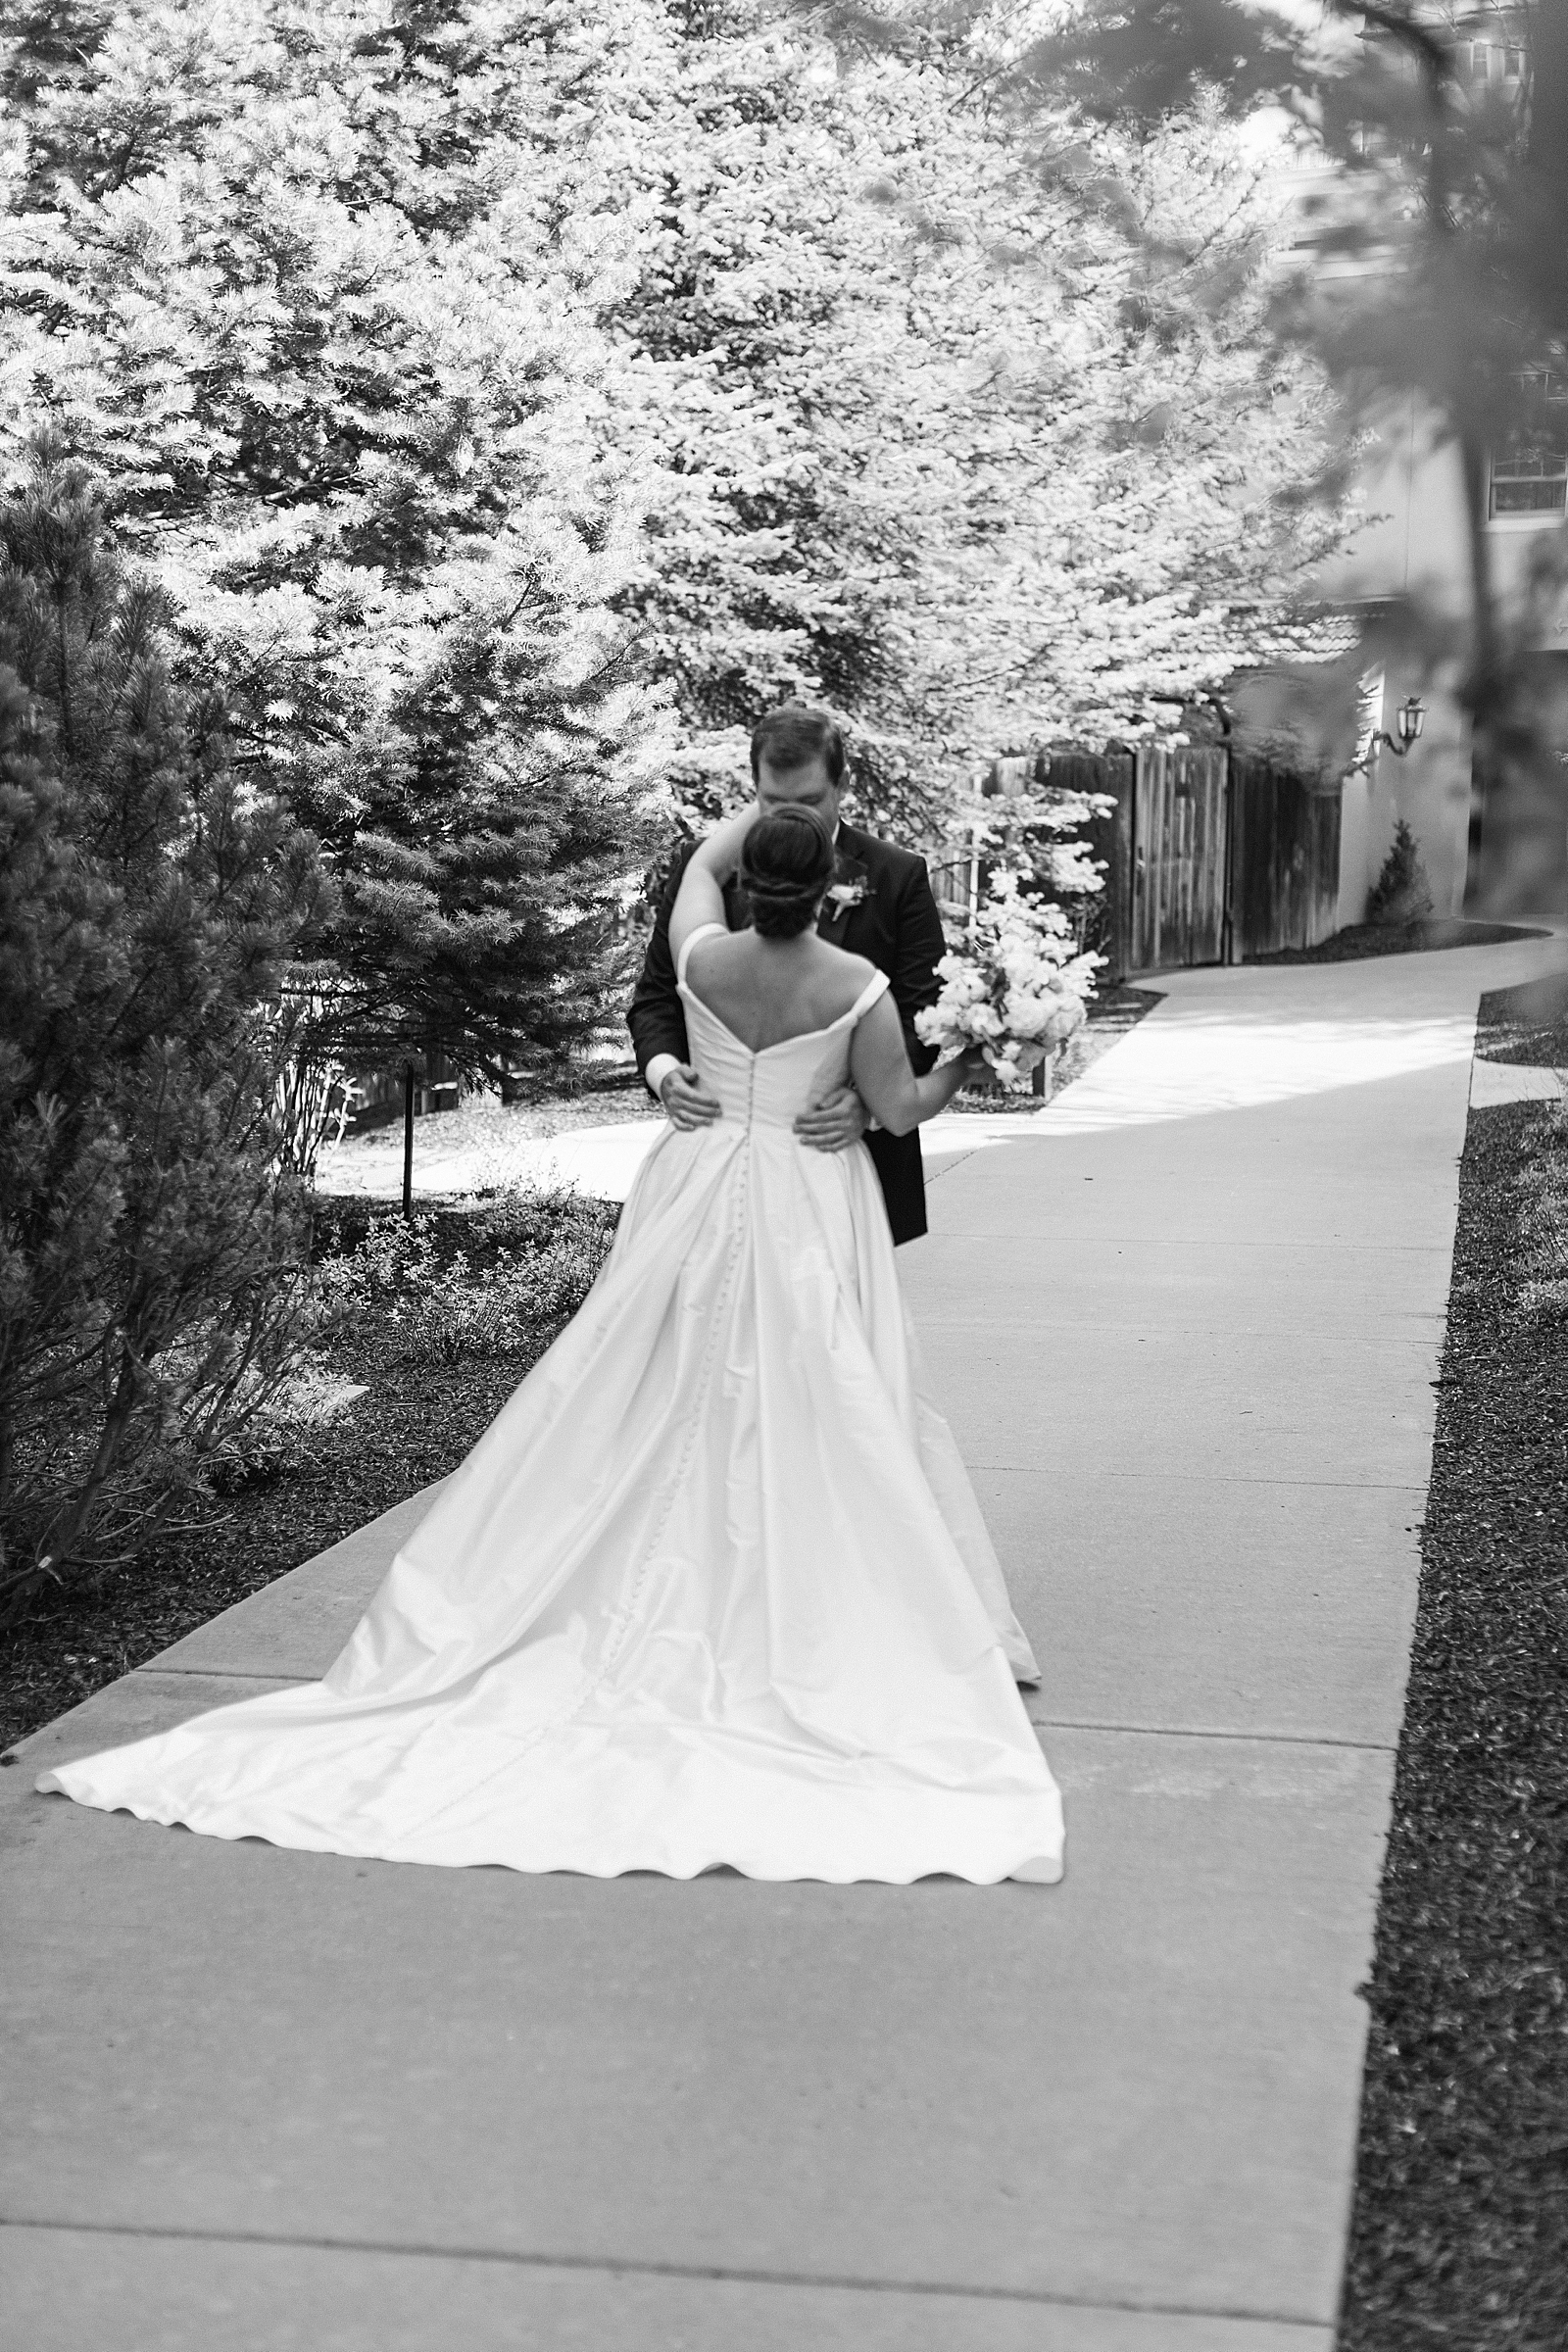 weddings at The Broadmoor; Colorado Springs wedding venues